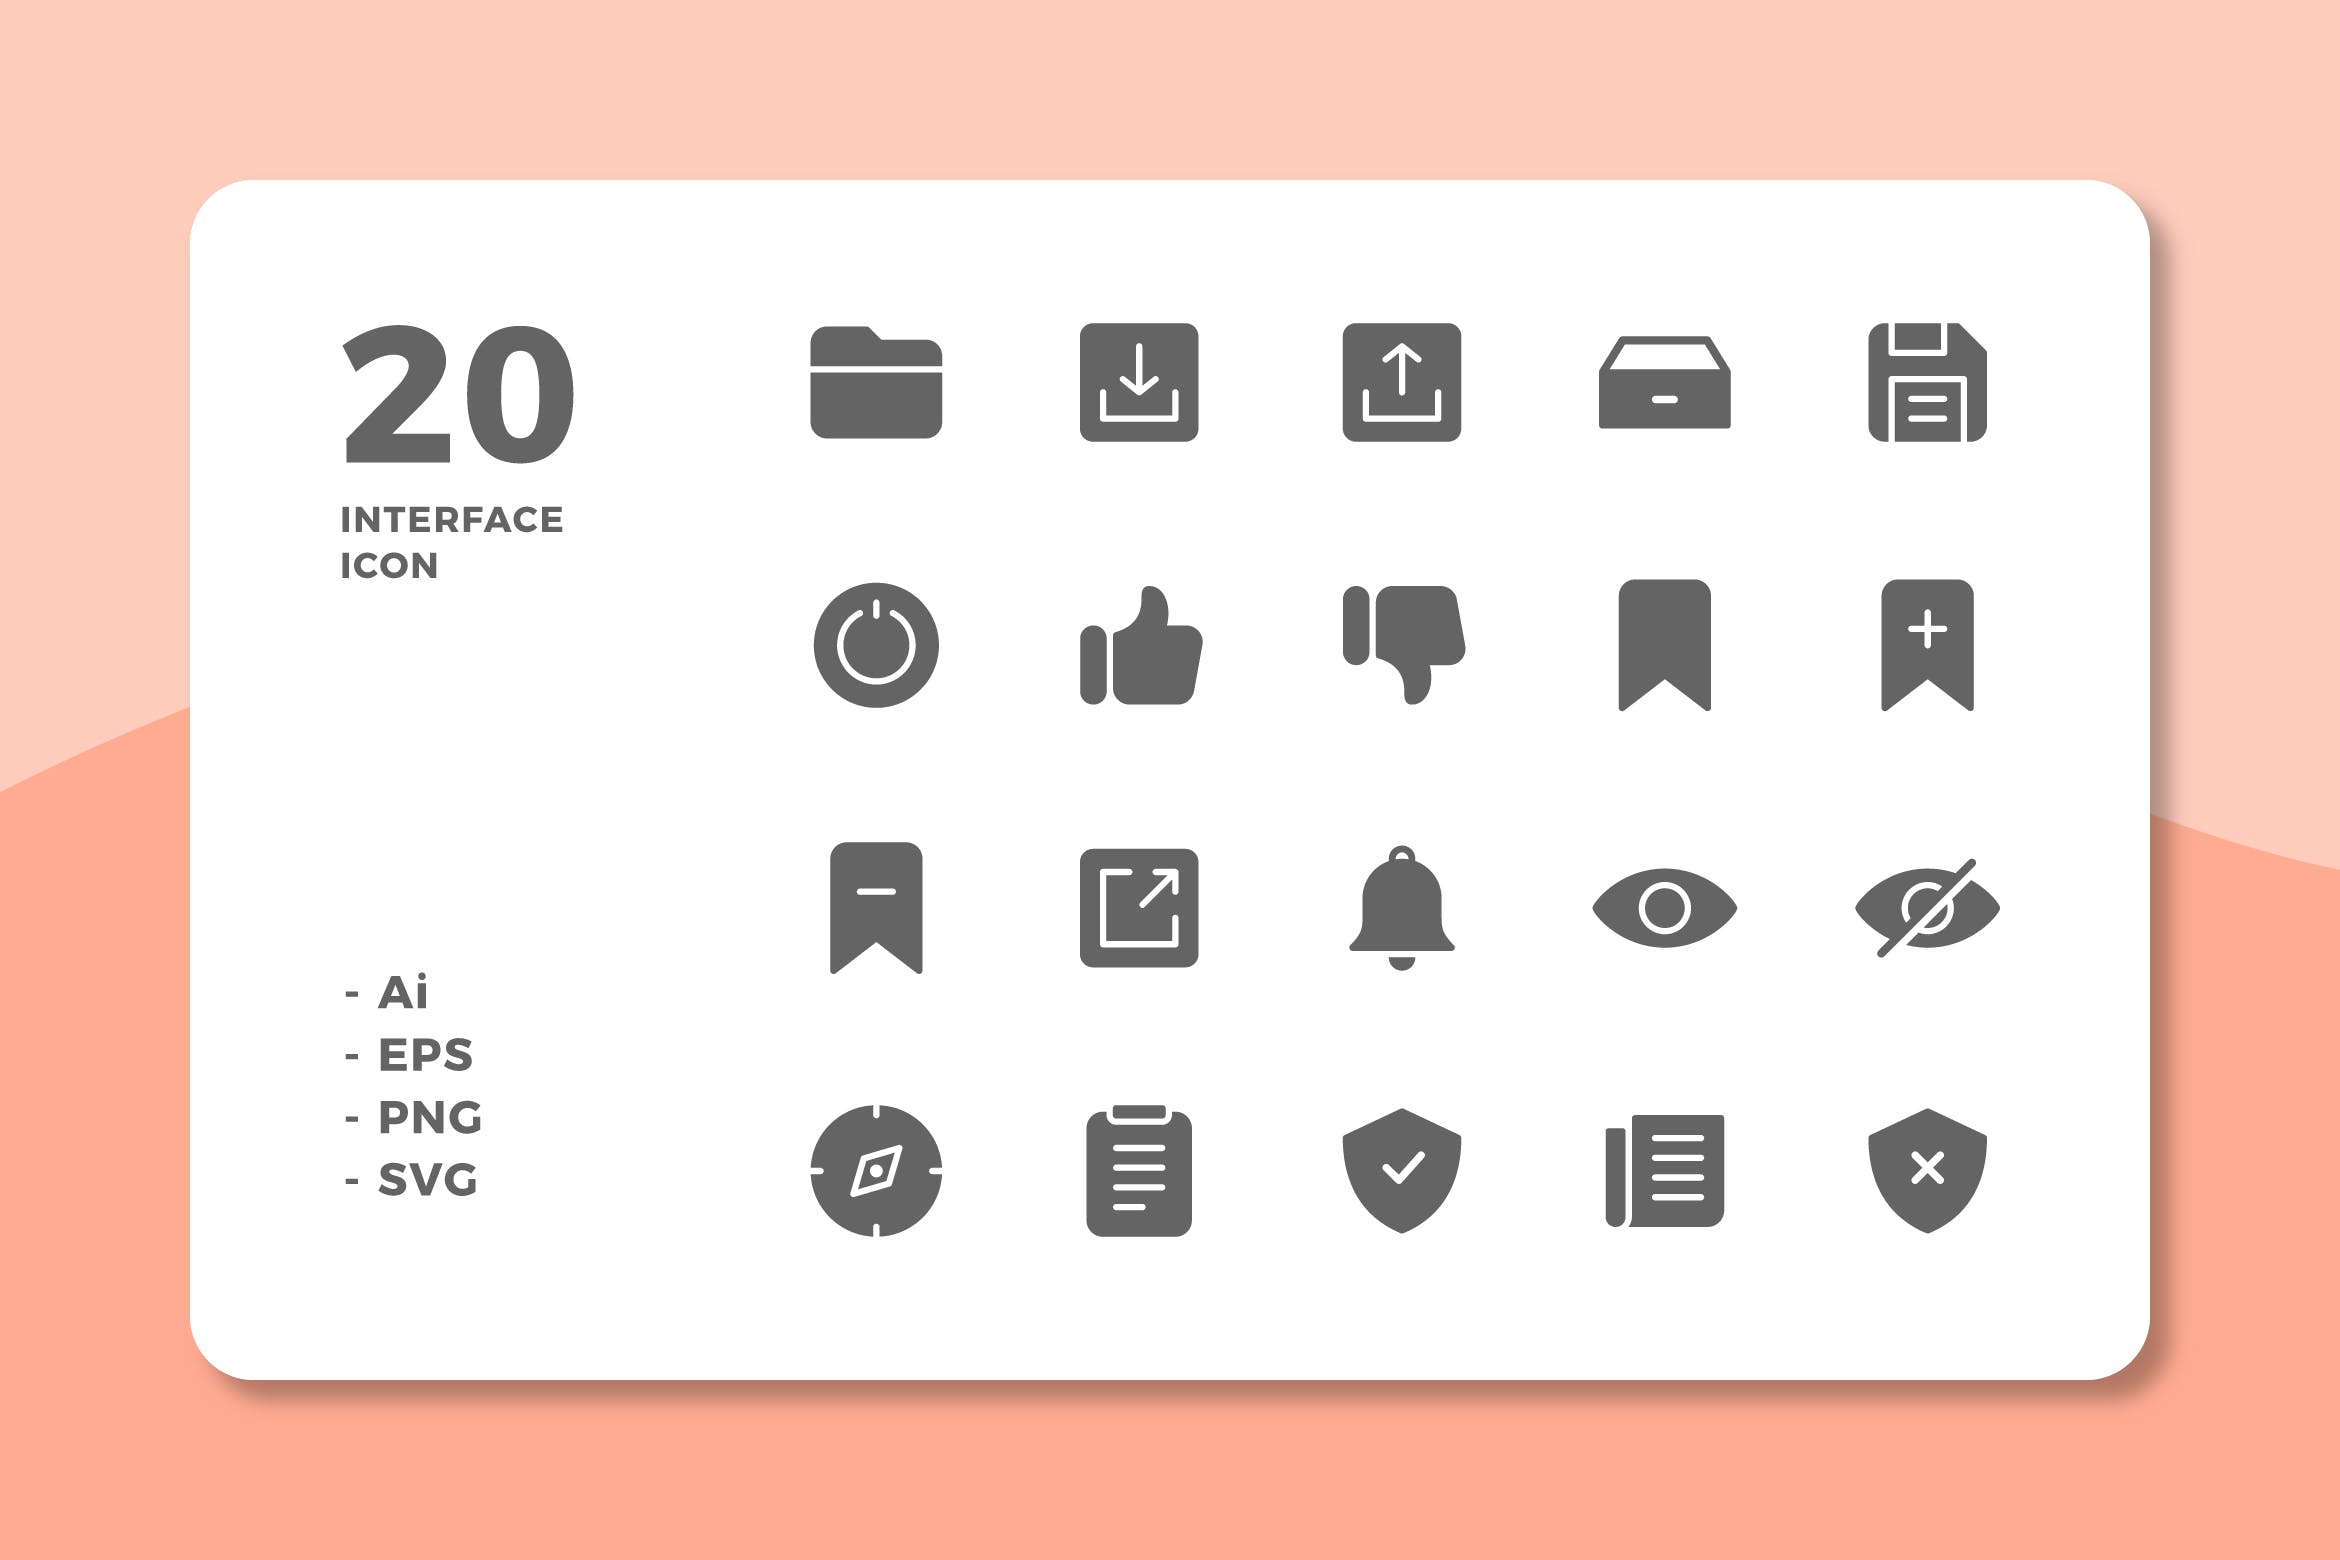 20枚UI界面设计APP操作选项16图库精选图标v3 20 Interface Icons Vol.3 (Solid)插图